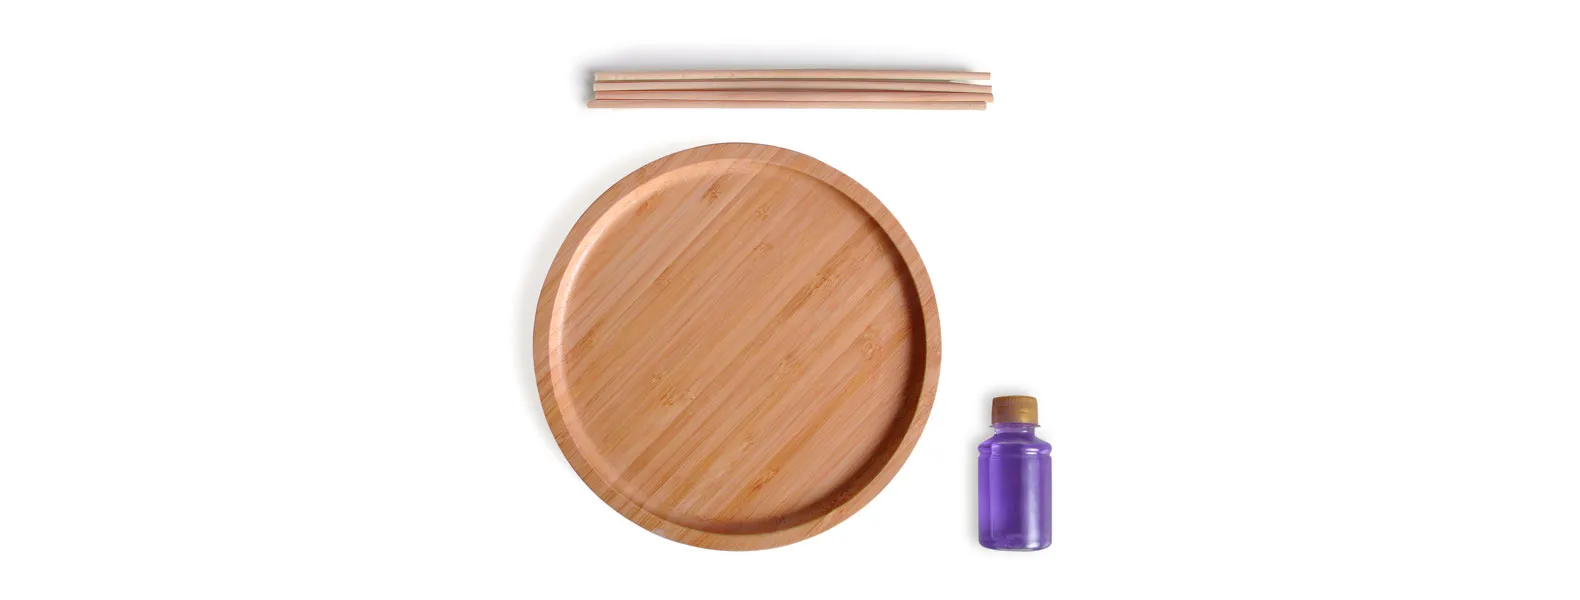 Kit para bandeja e aromatizador. Conta com bandeja redonda em bambu e aromatizador de ambiente com fragrância de lavanda.